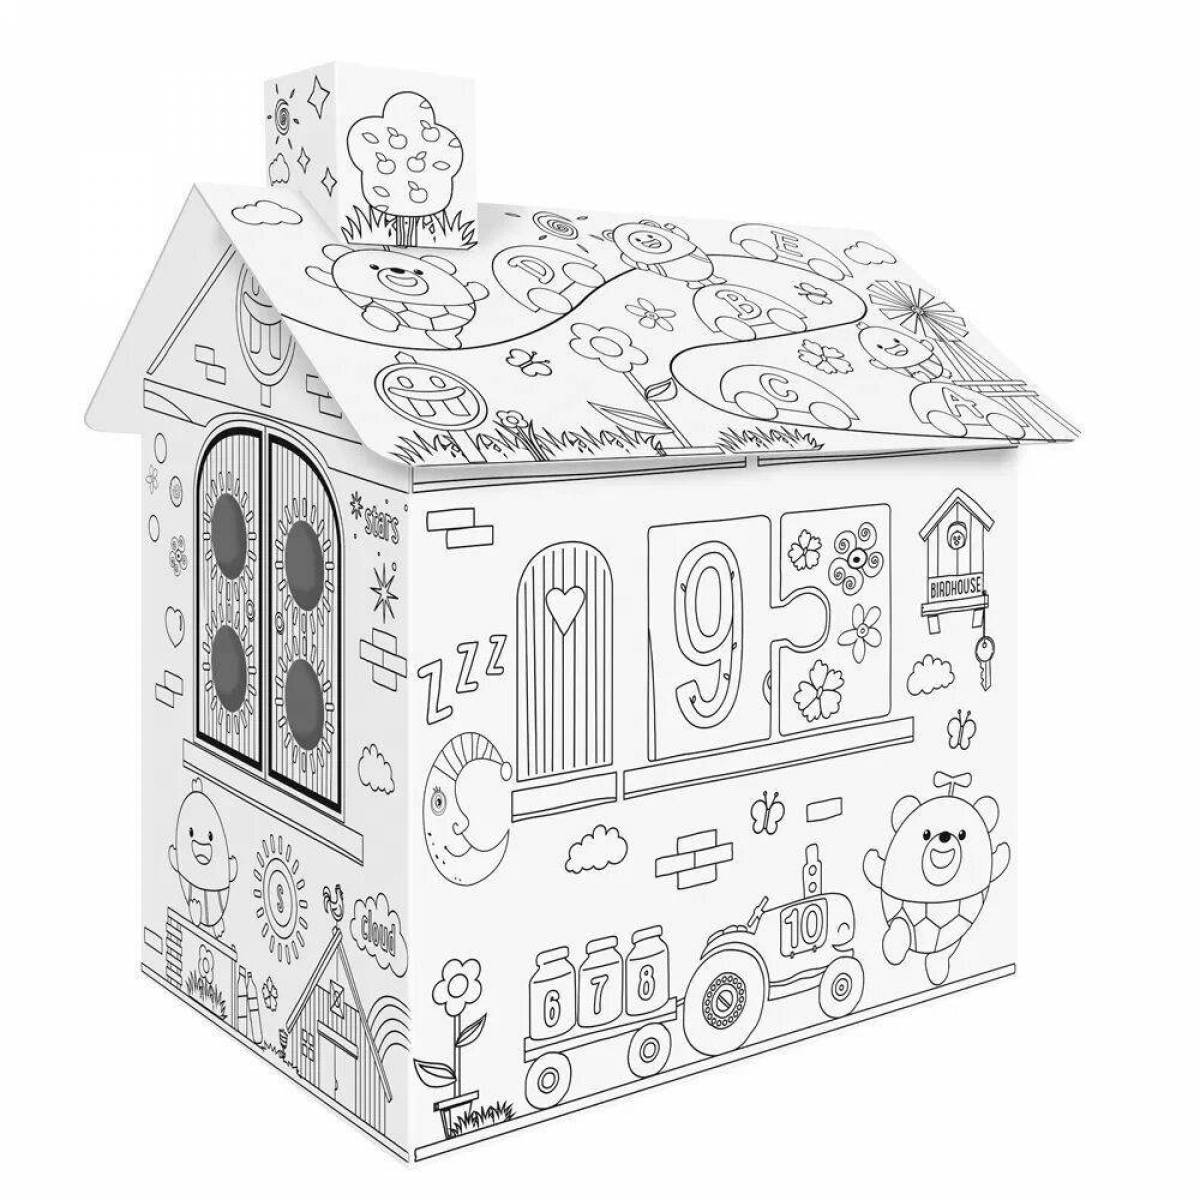 Выдающаяся раскраска картонного домика для младенцев